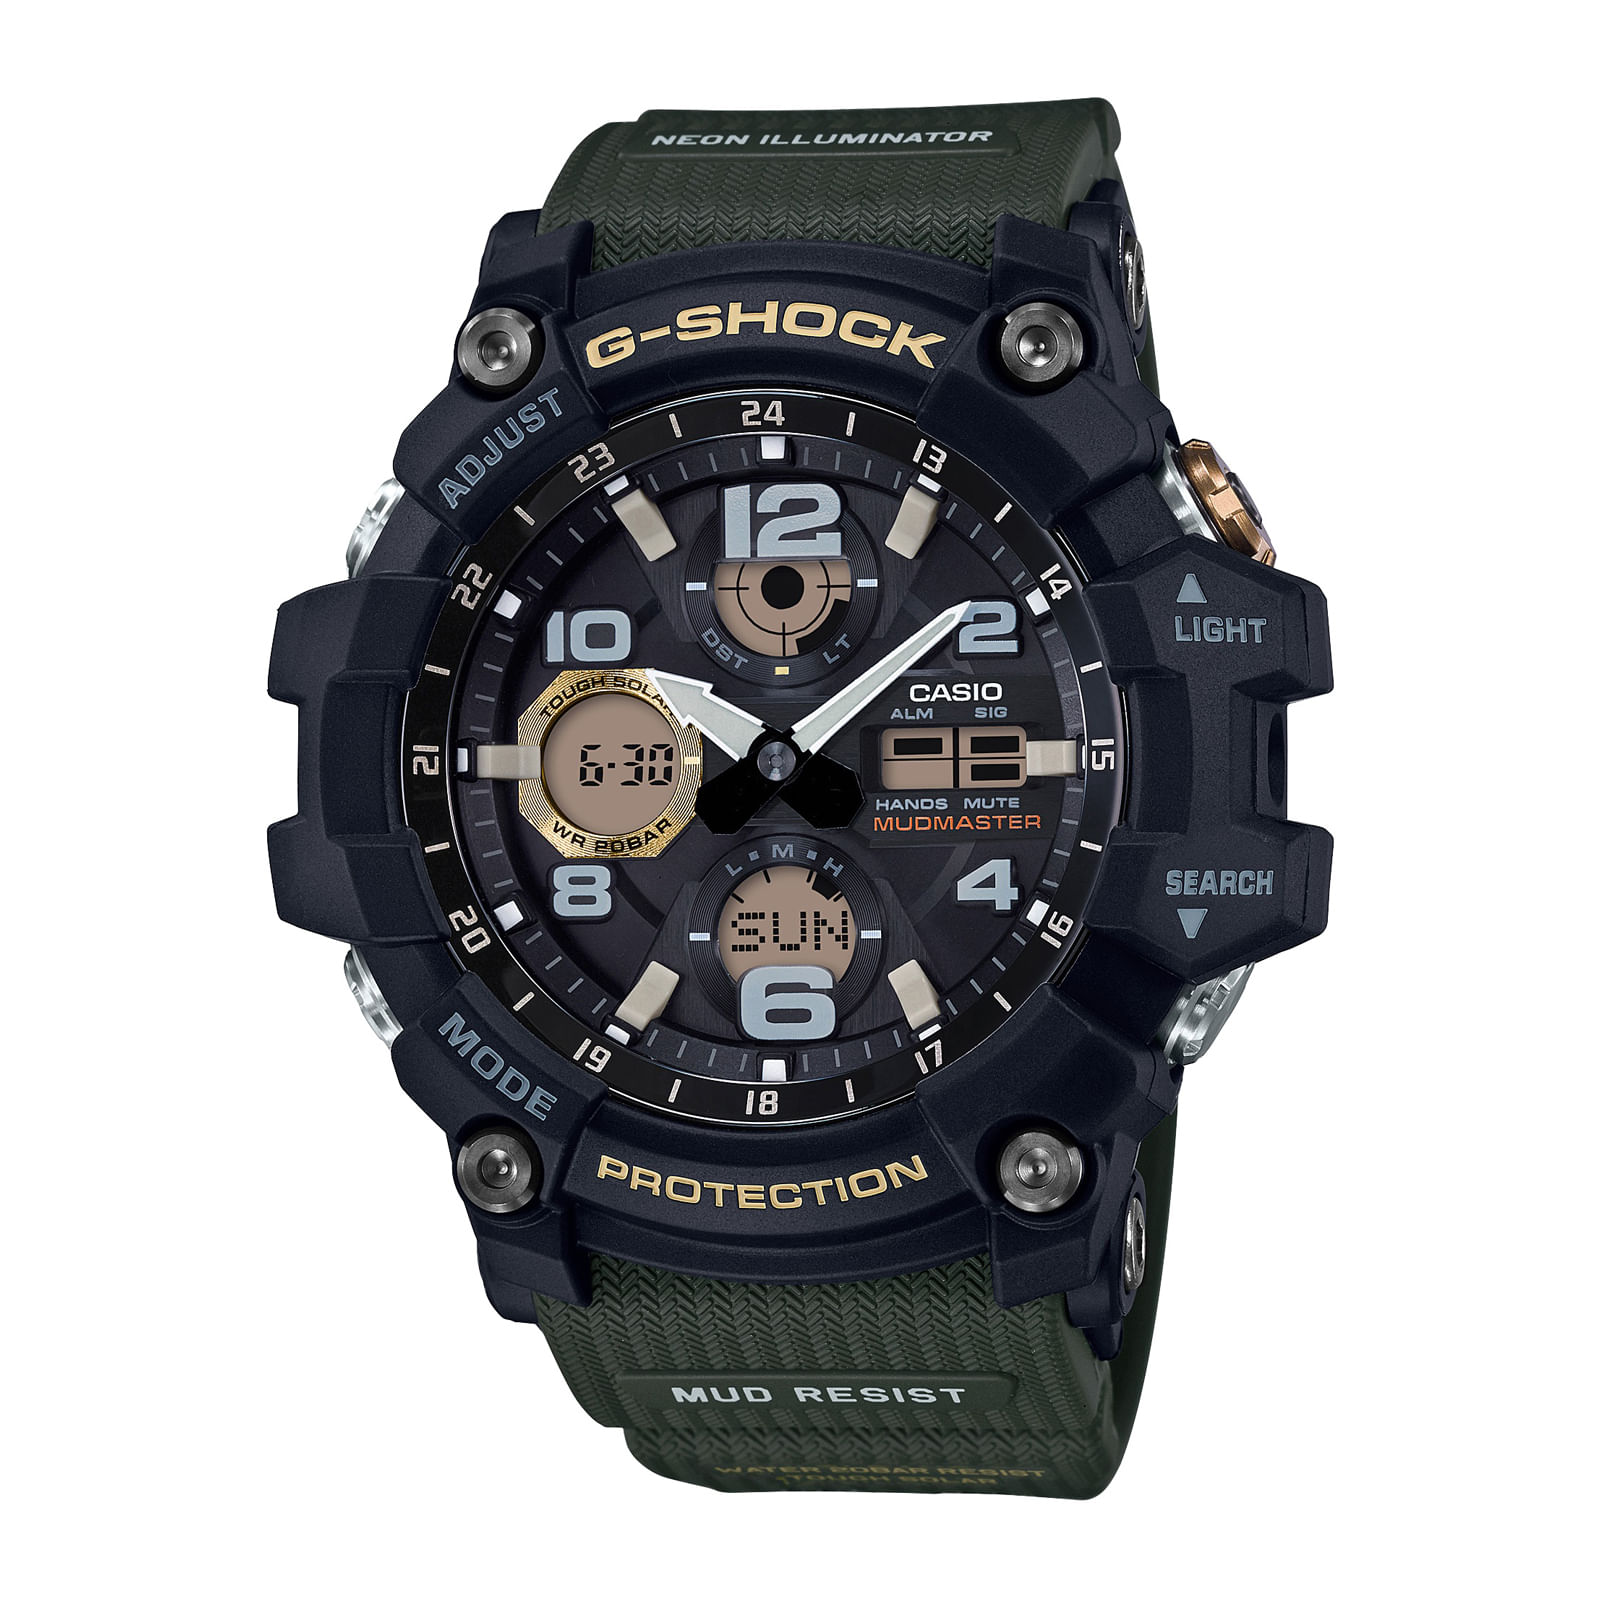 Reloj G-SHOCK GSG-100-1A3 Resina/Acero Hombre Negro